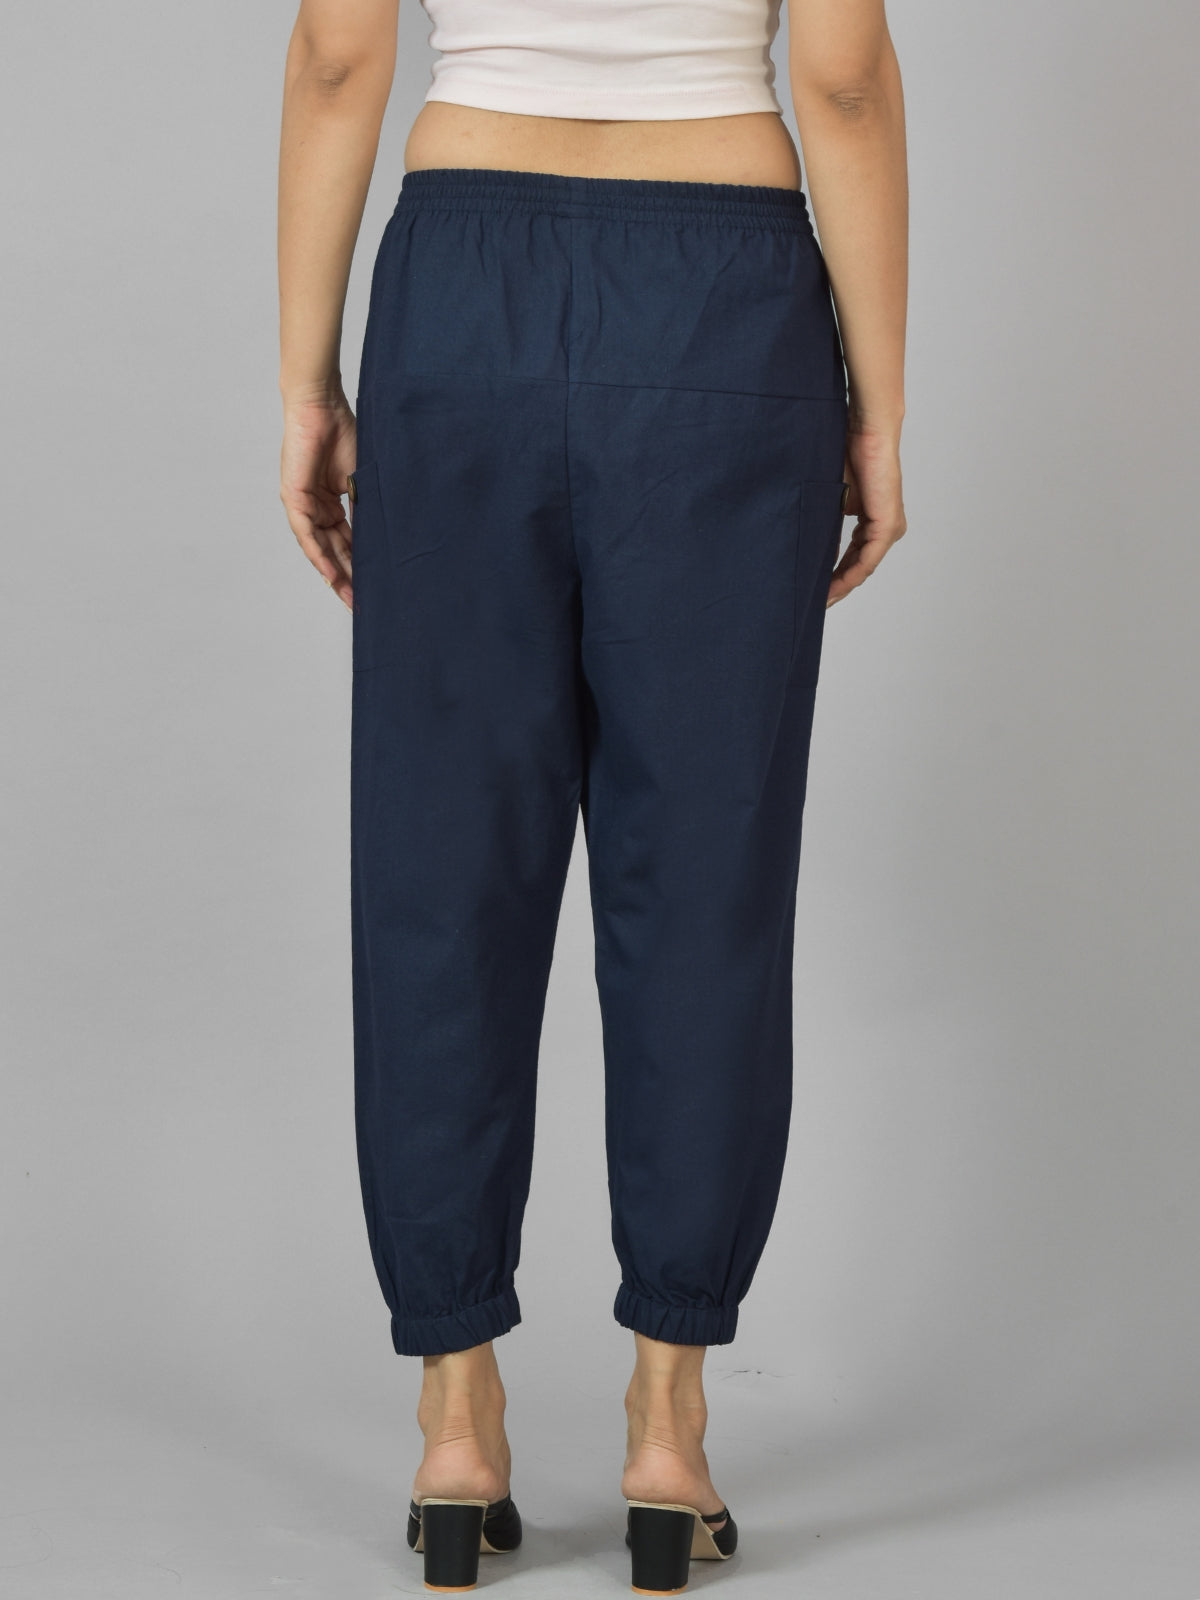 Quaclo Women's Dark Blue Four Pocket Cotton Cargo Pants